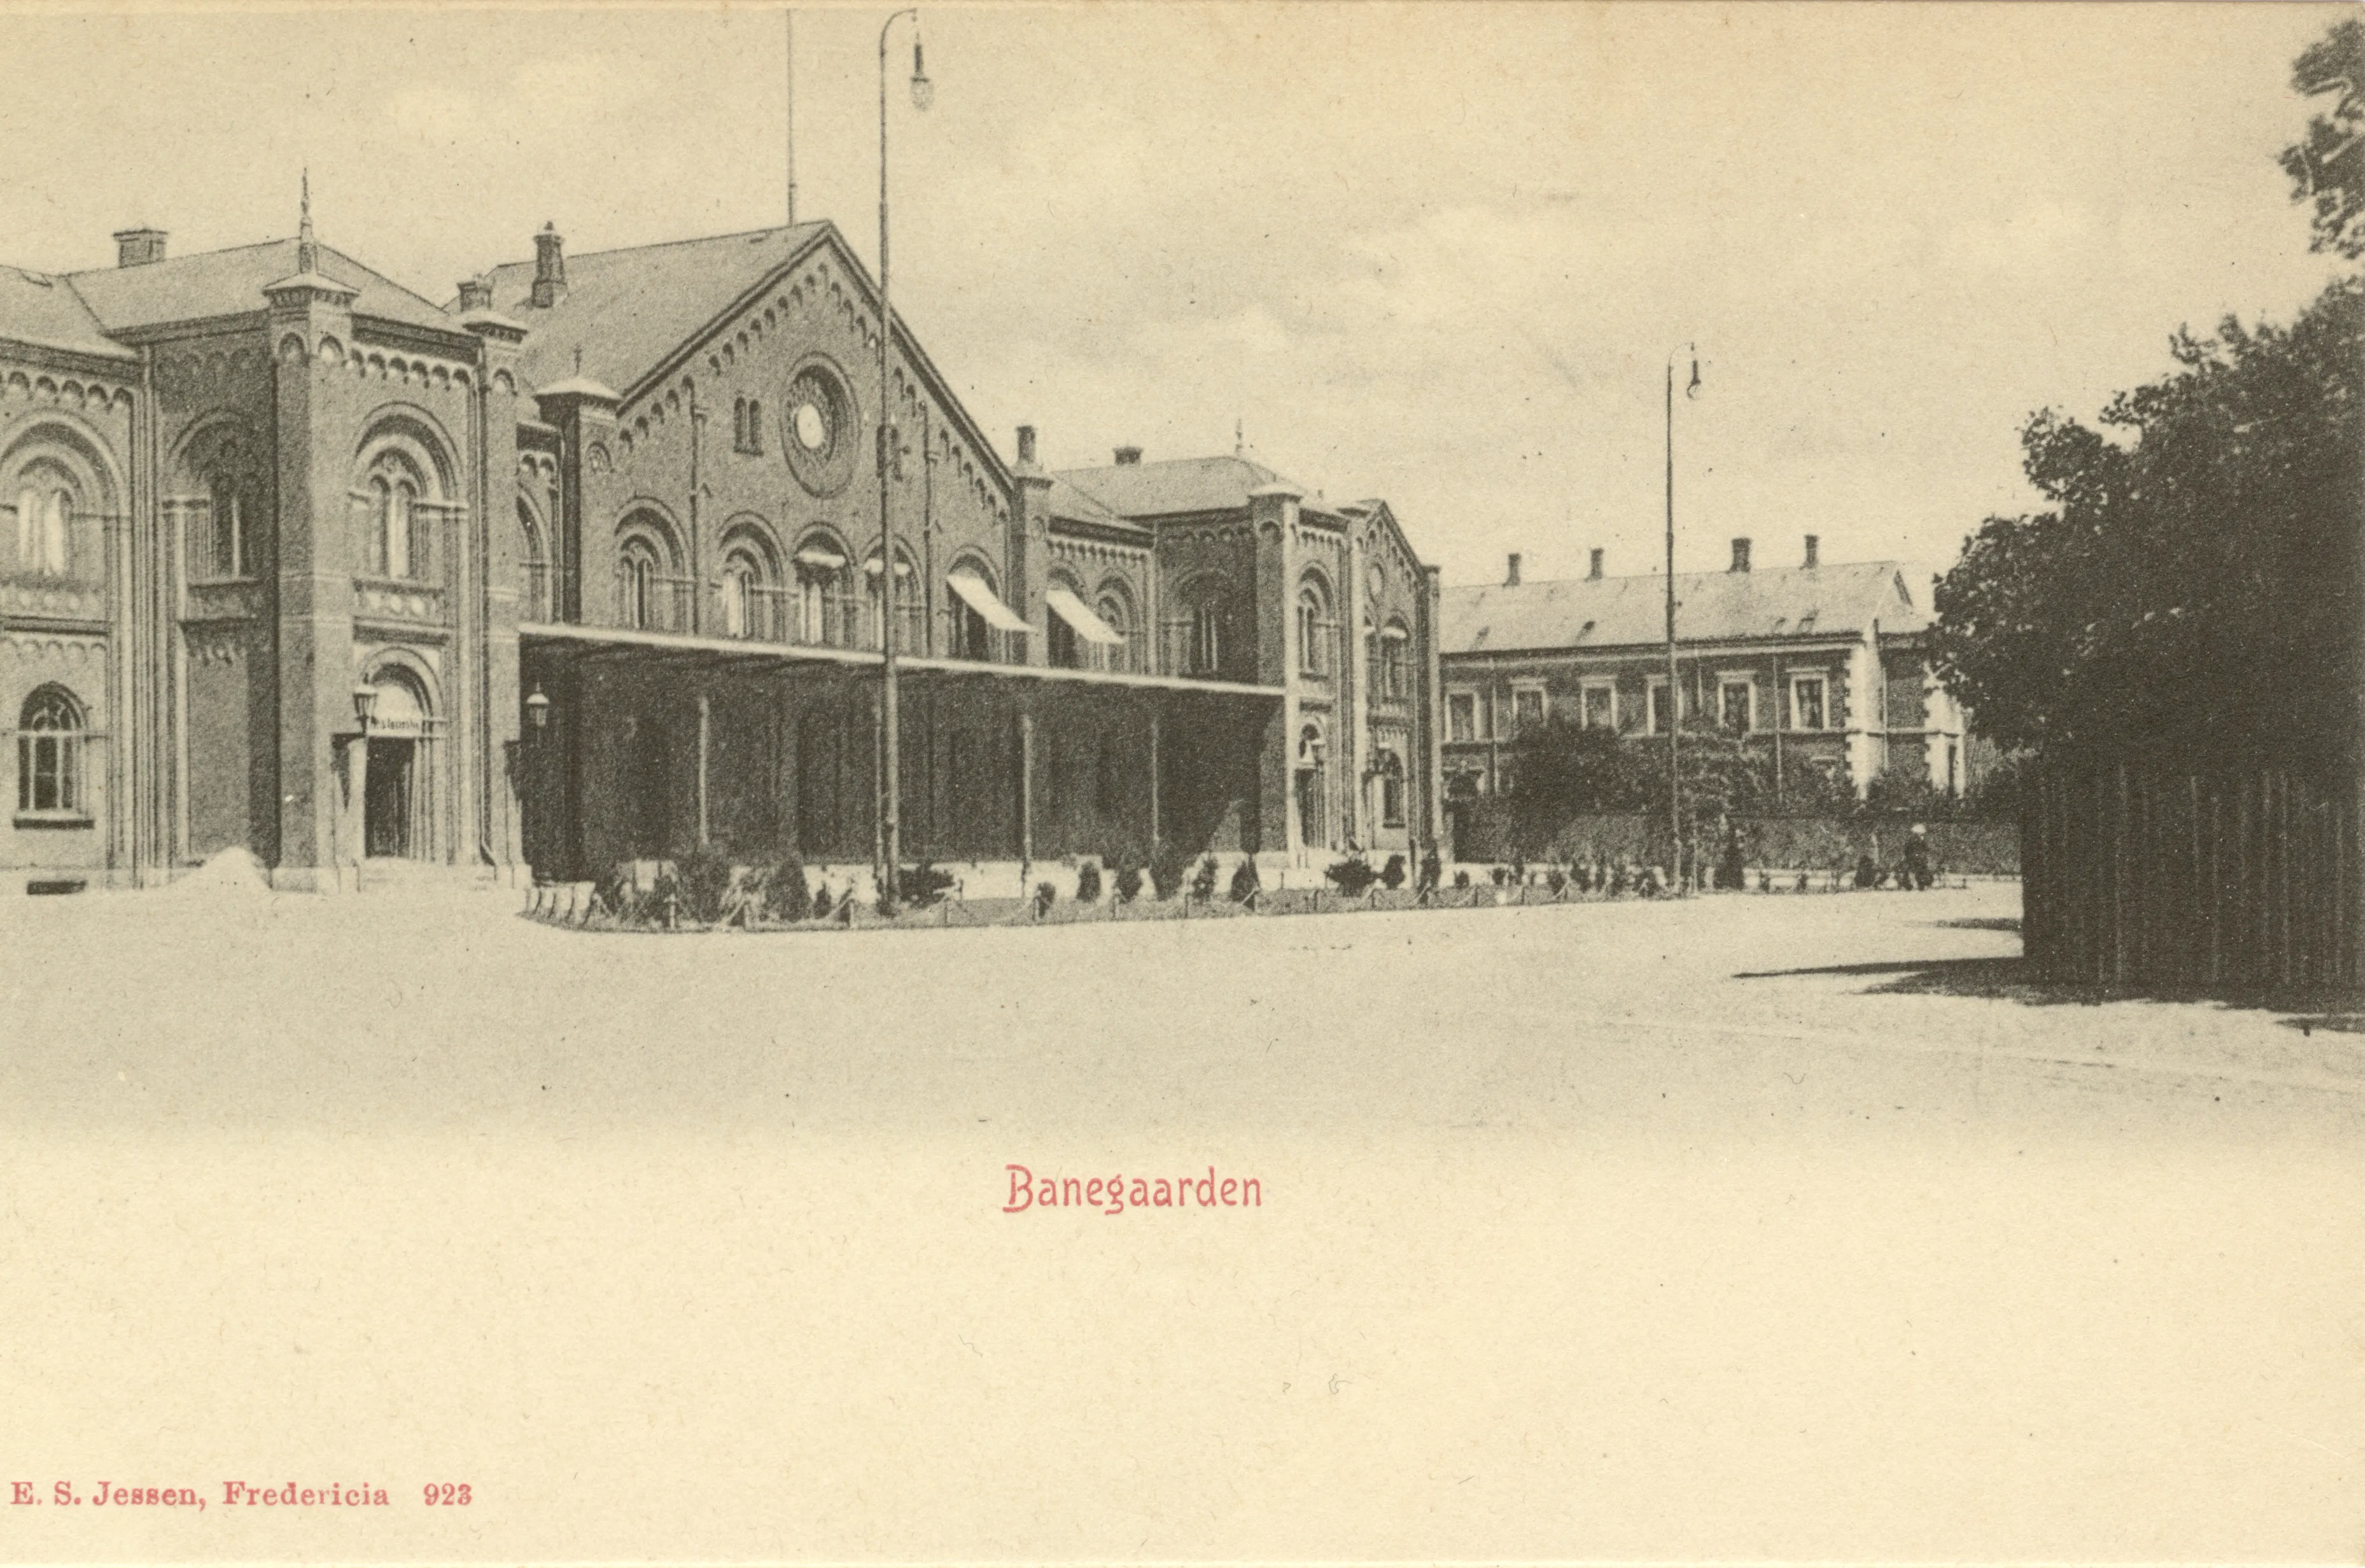 Postkort med Fredericia Banegård.